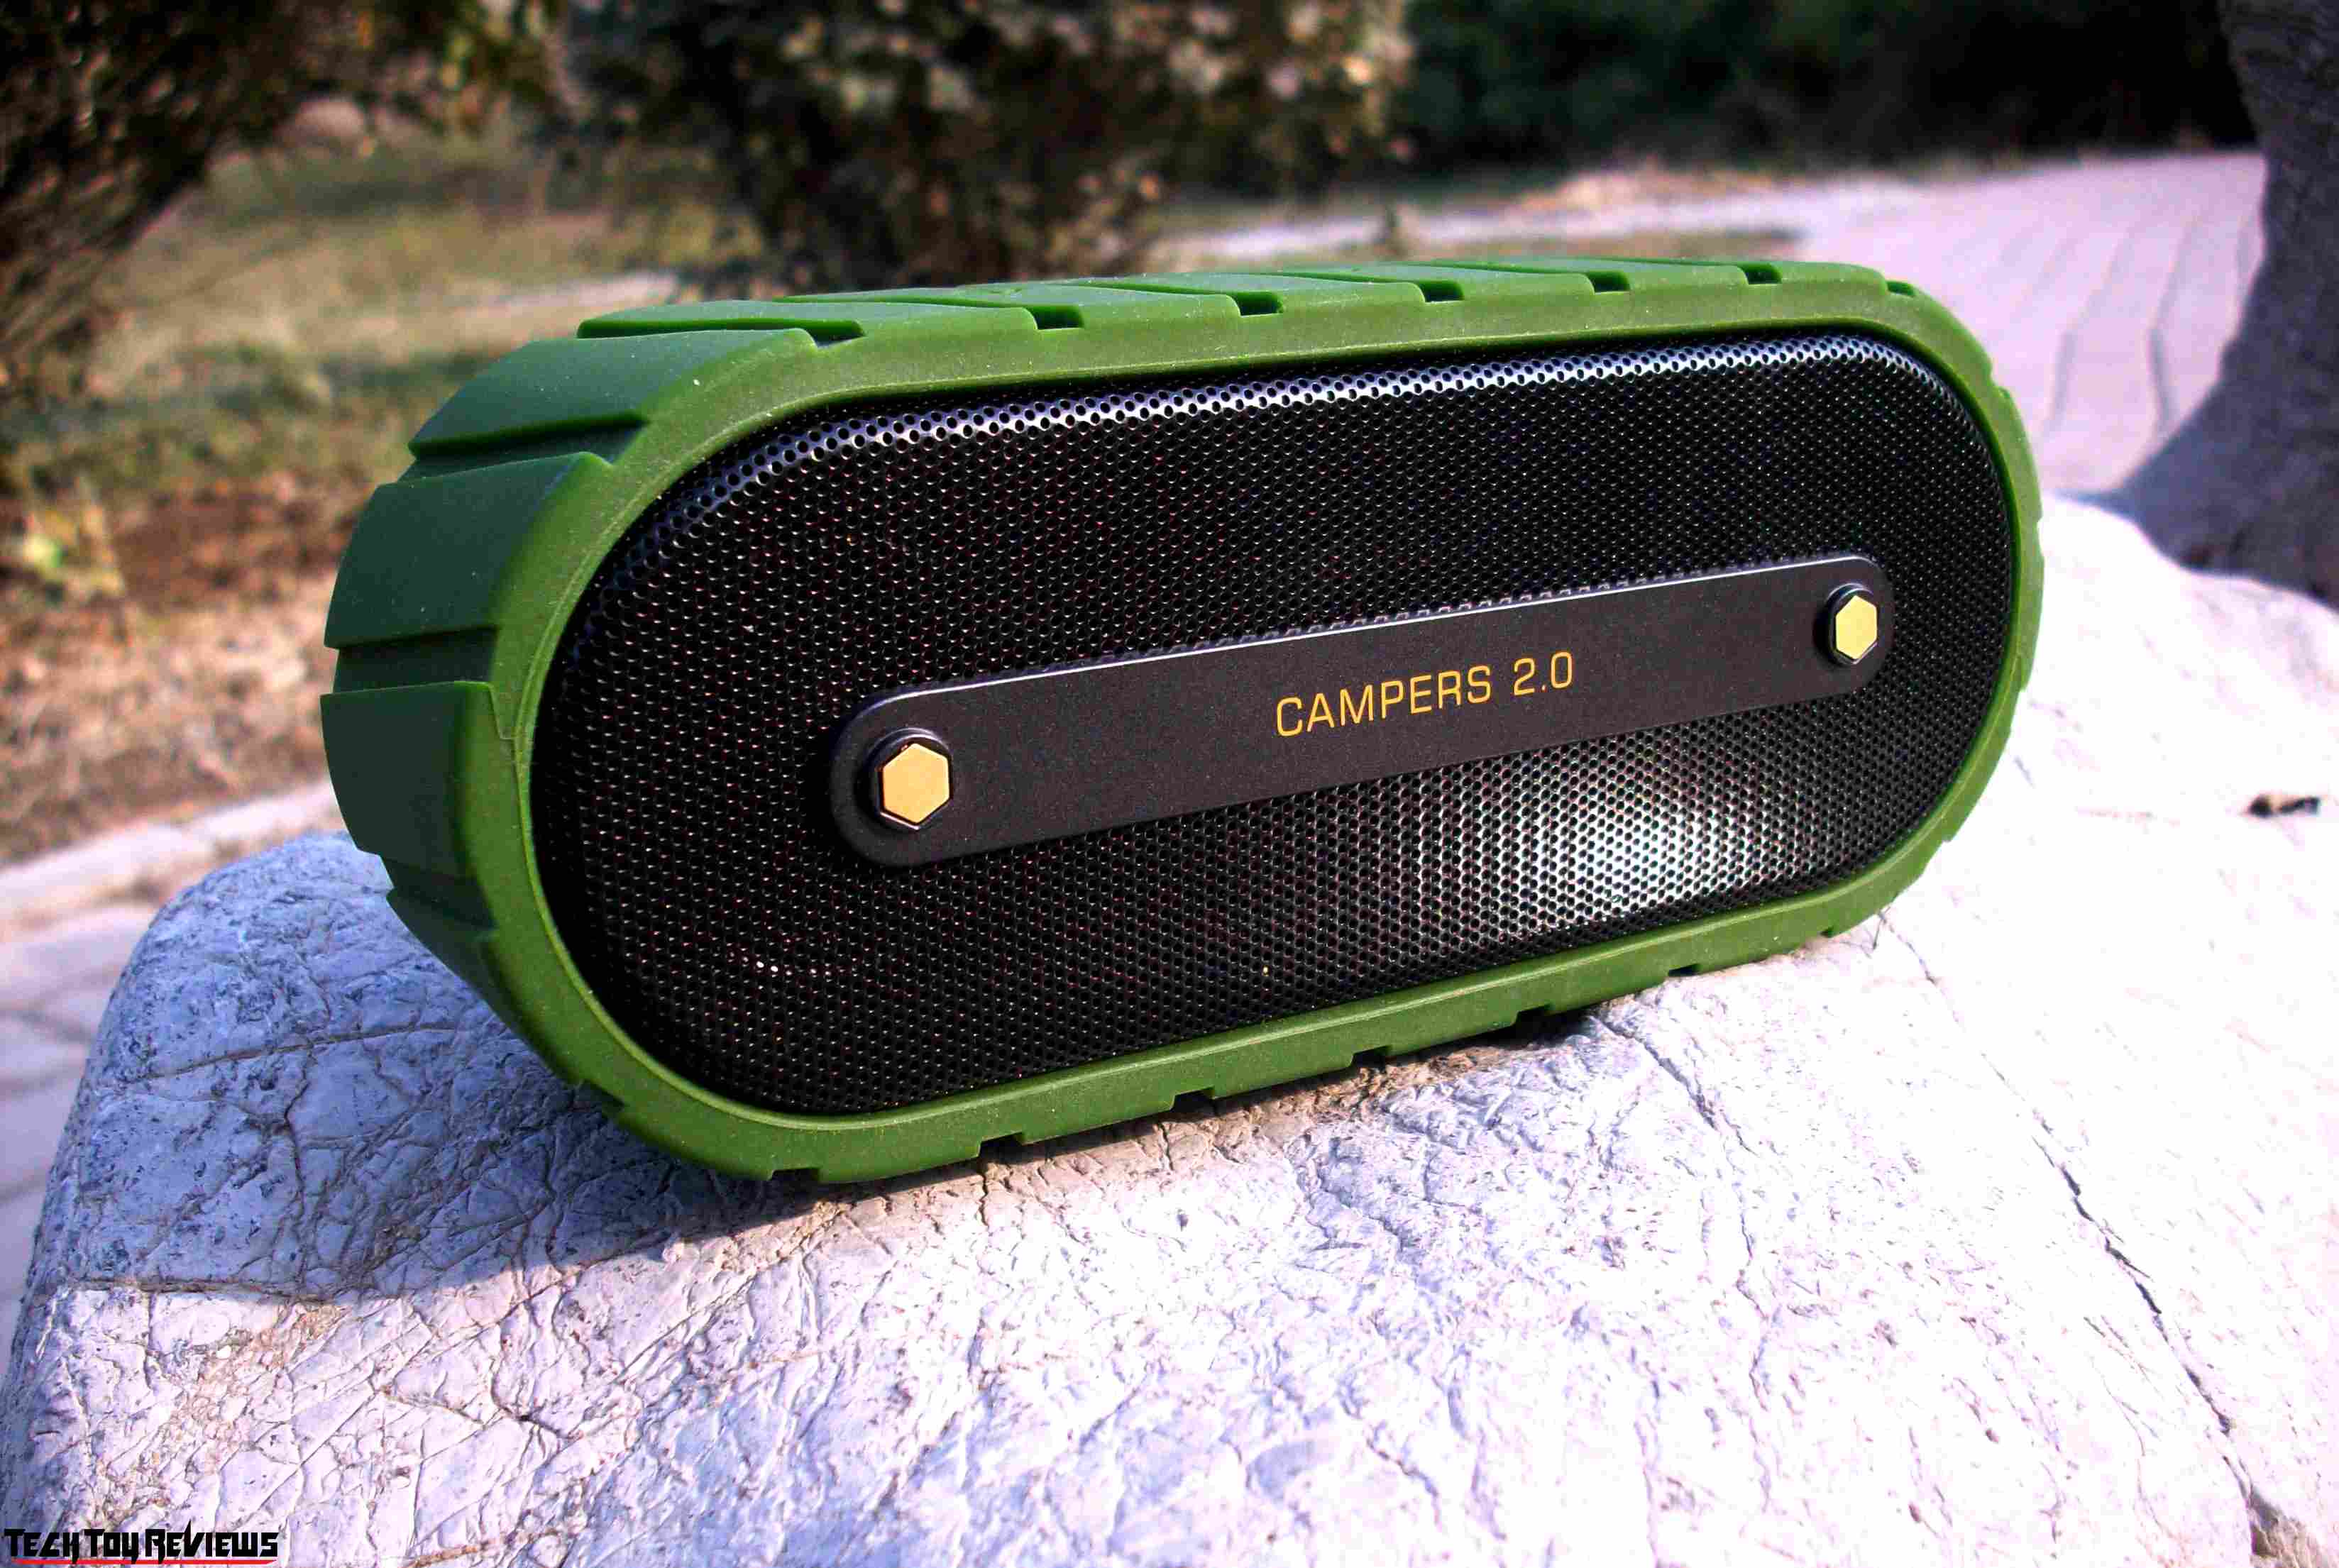 outdoor Speakers